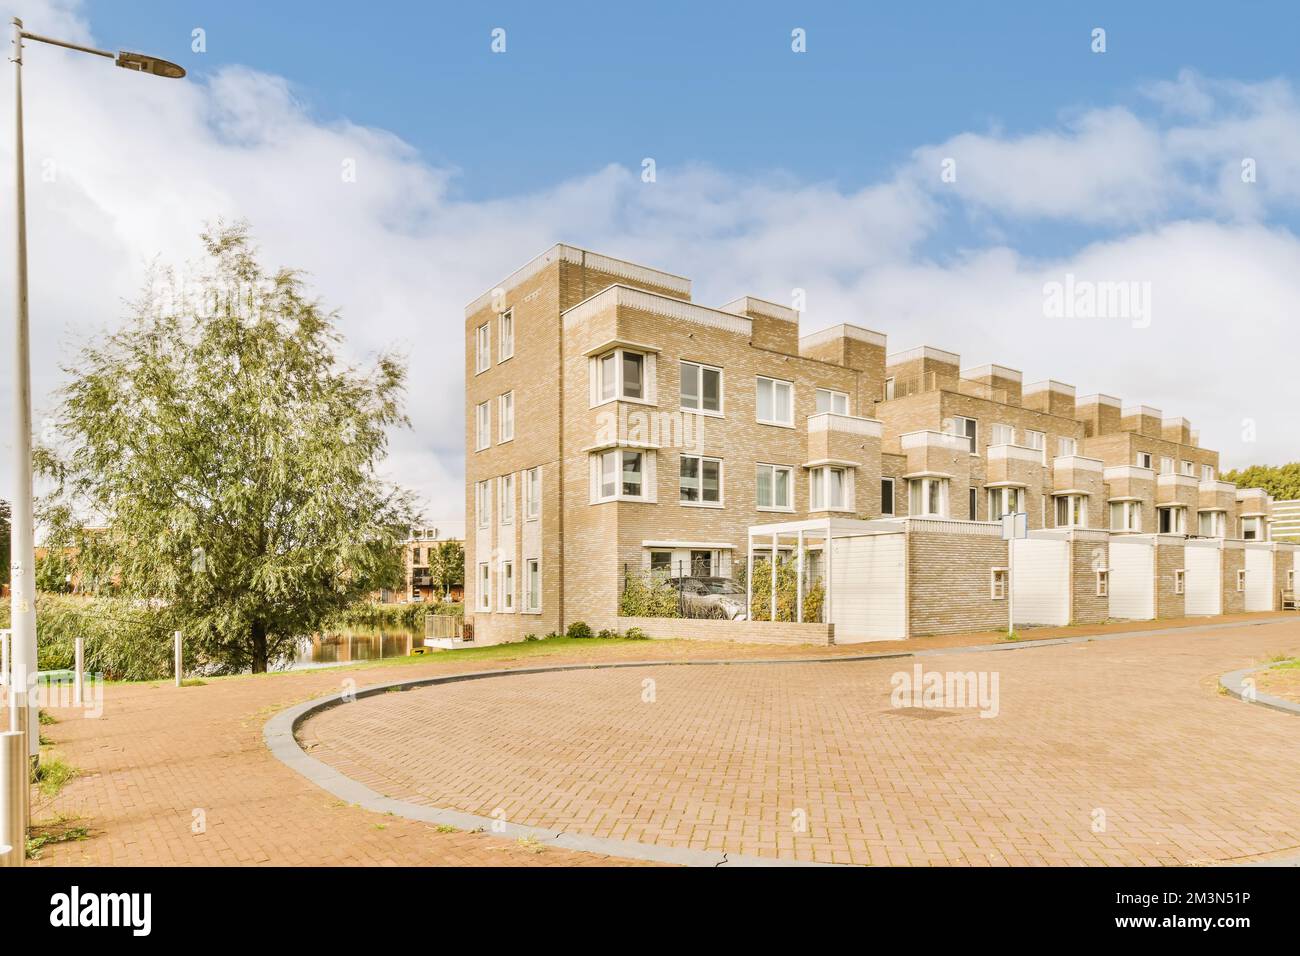 Ein Apartmentkomplex in den Vororten von johannesburg, mit Backsteinauffahrten und Bäumen auf beiden Seiten Foto von crediton/Shutterstocker Stockfoto